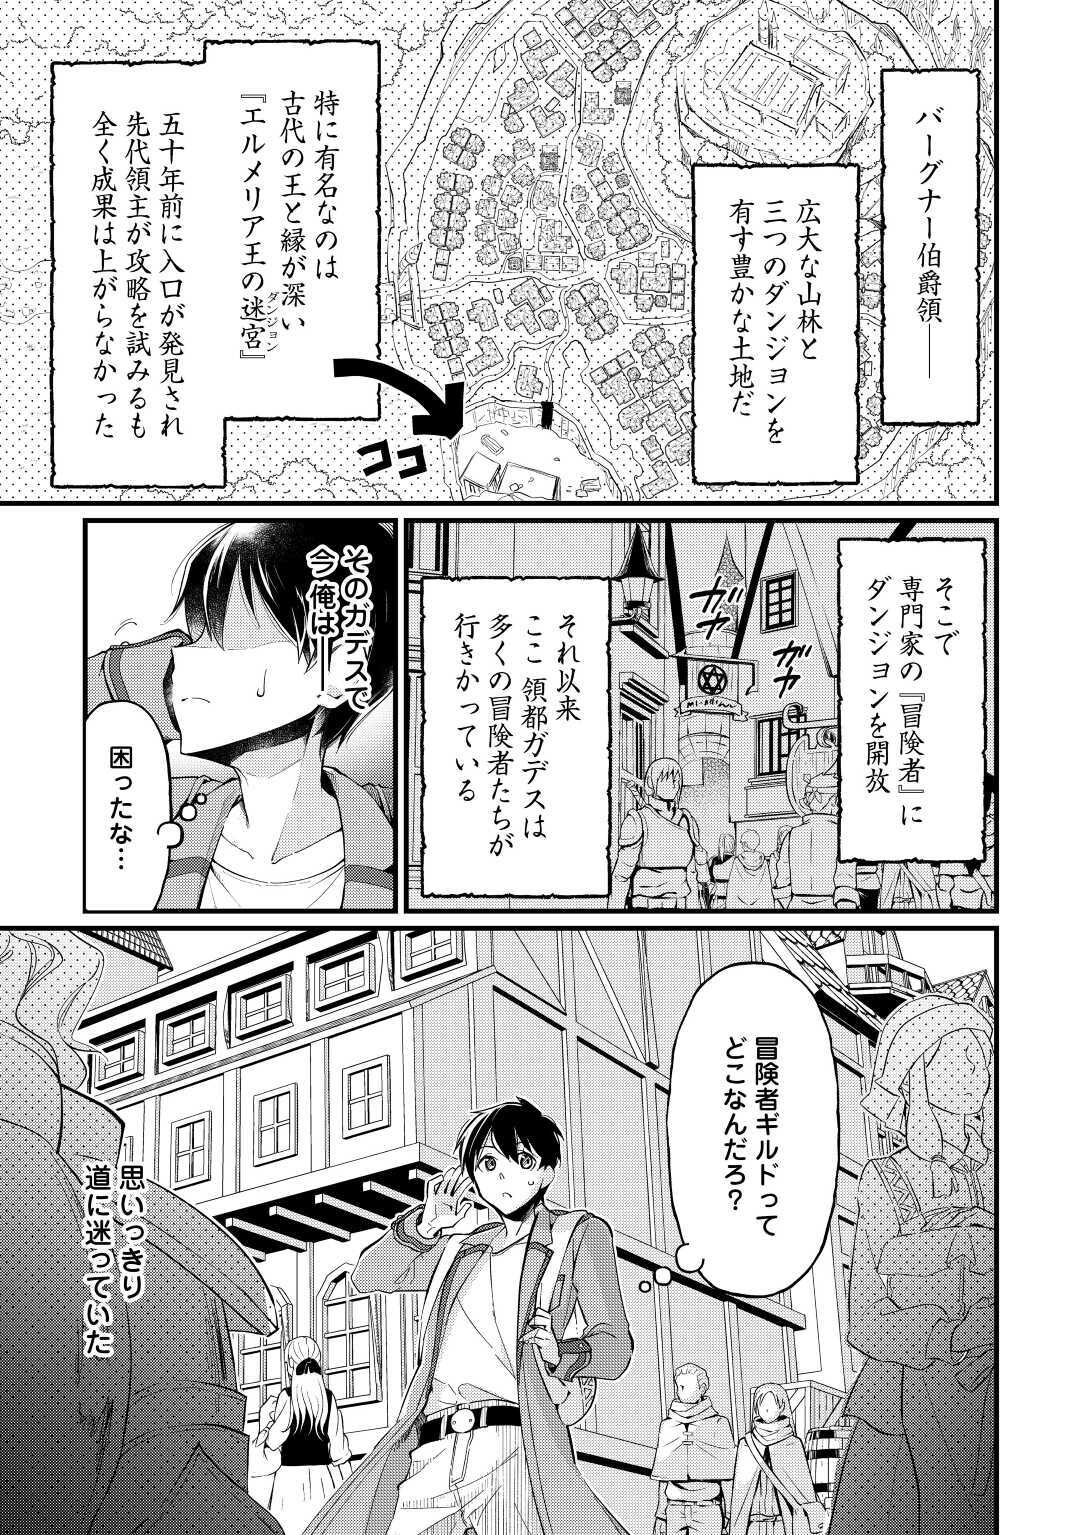 Ochikobore 1 Mahou Tsukai wa, Kyou mo Muishiki ni Cheat o Tsukau - Chapter 2 - Page 1